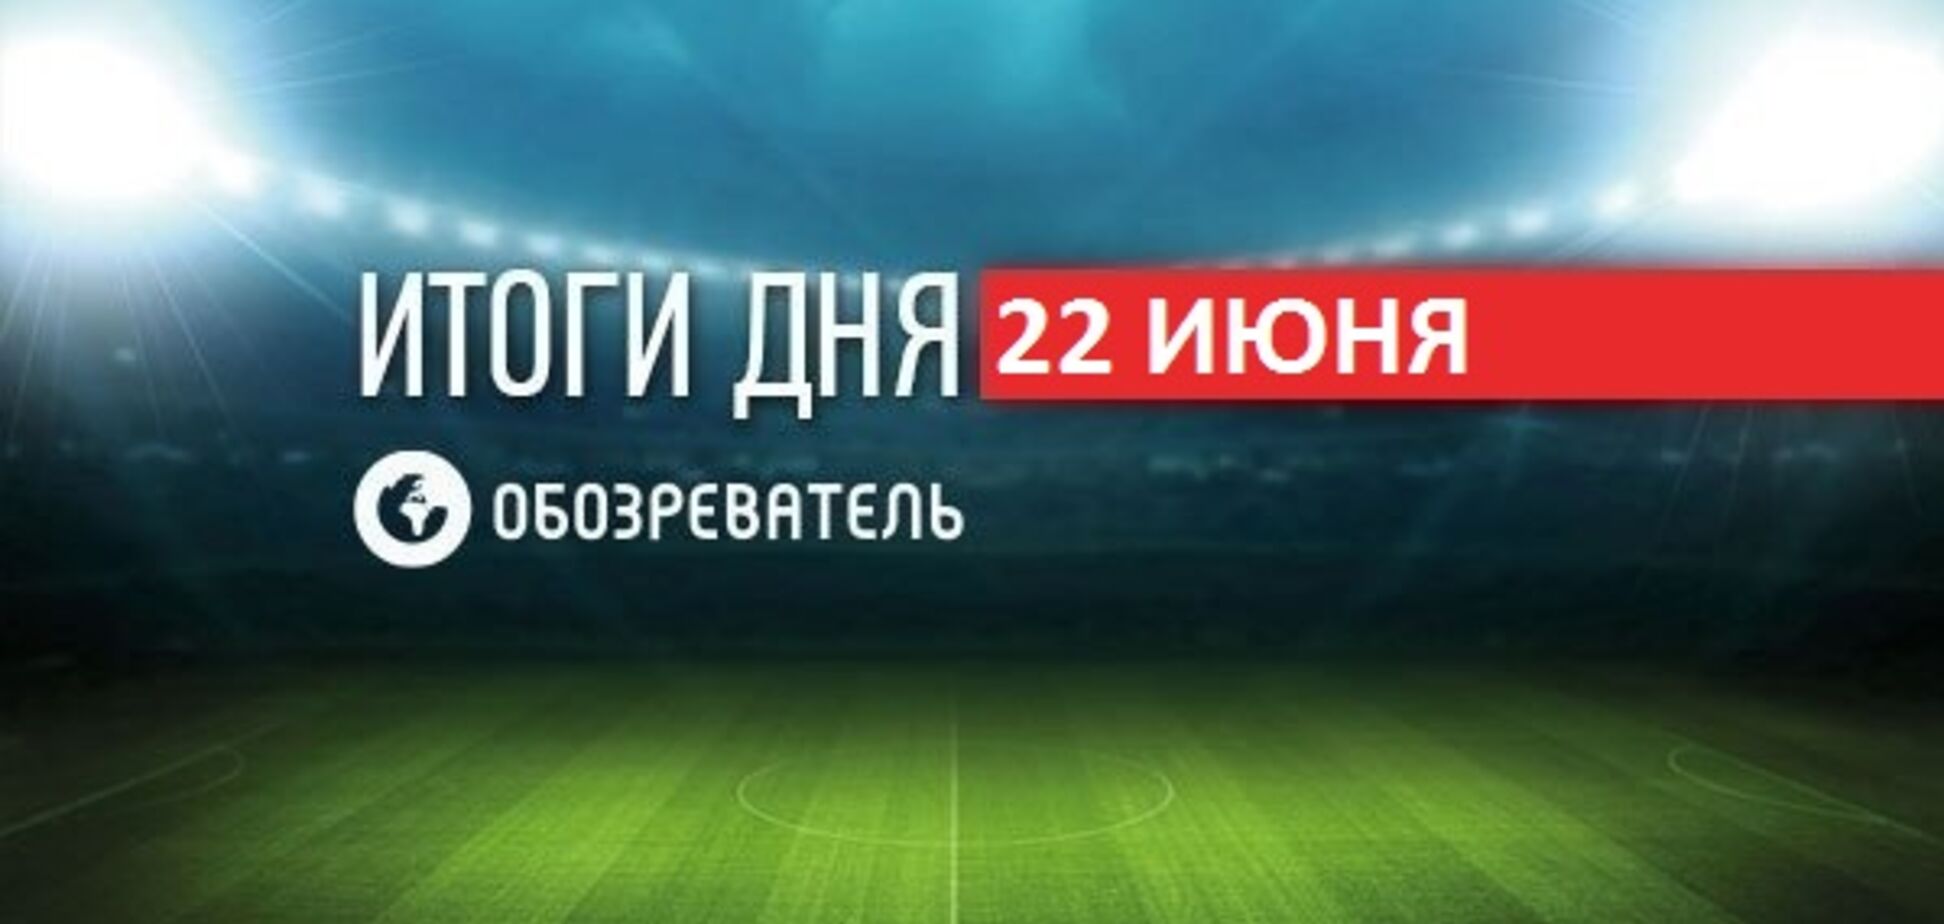 Тренер 'Колоса' рассказал о беспределе в матче с 'Динамо': итоги спорта 22 июня